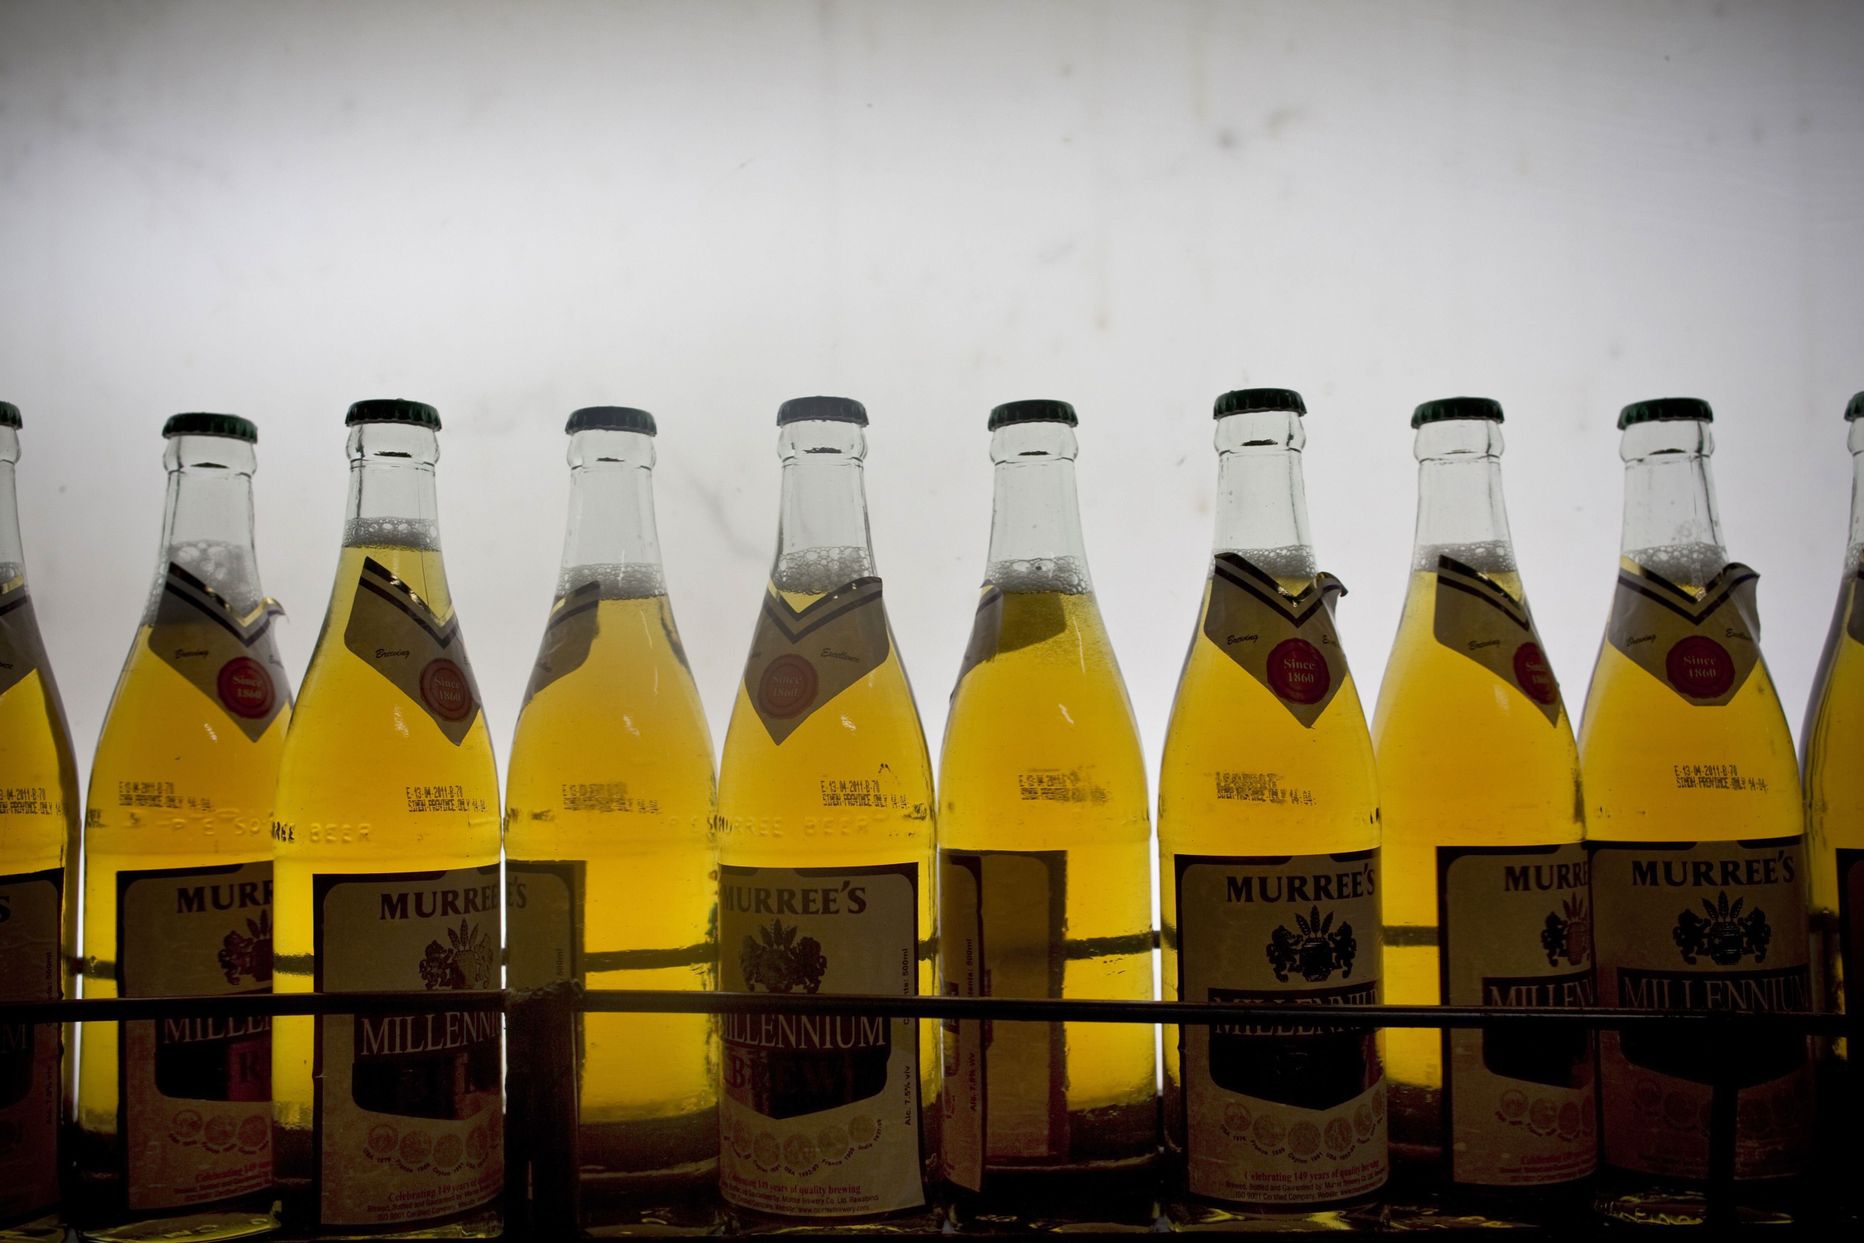 Pakistanis seaduslikult tegutseva Muree alkoholitööstuse toodang.